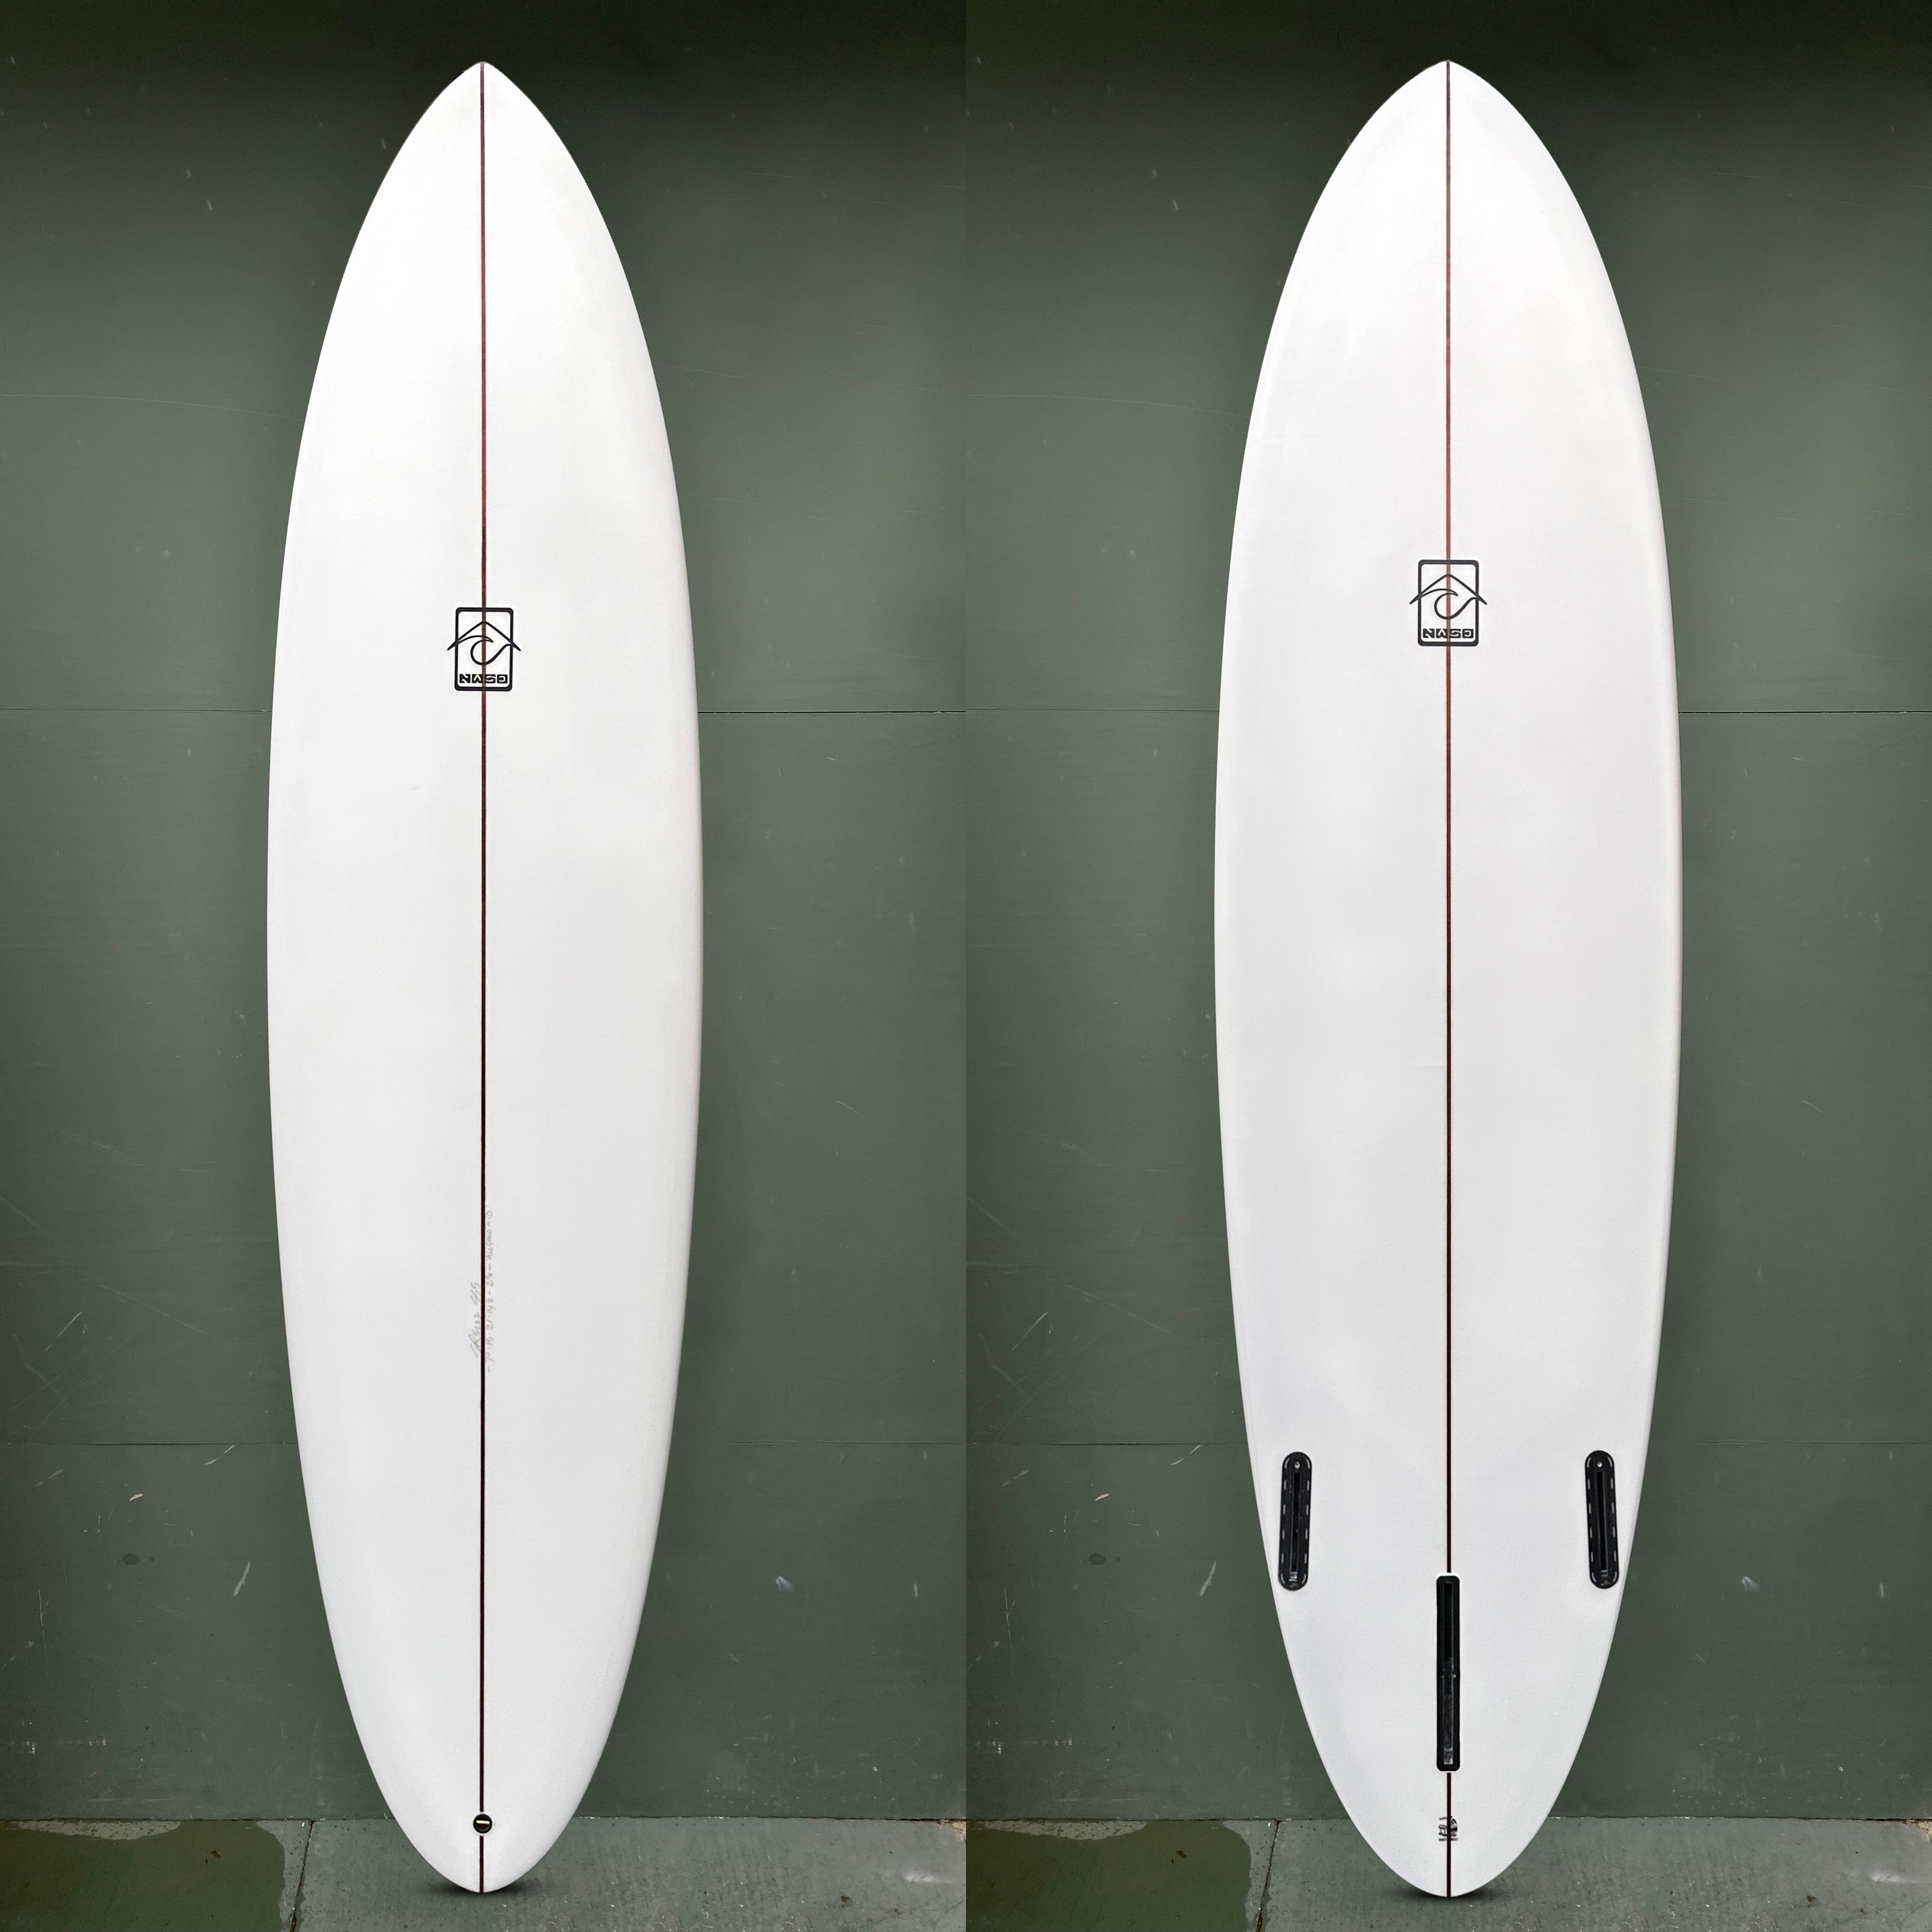 Northwest Surf Design Surfboards - 7'0" "All Good" Surfboard - Seaside Surf Shop 